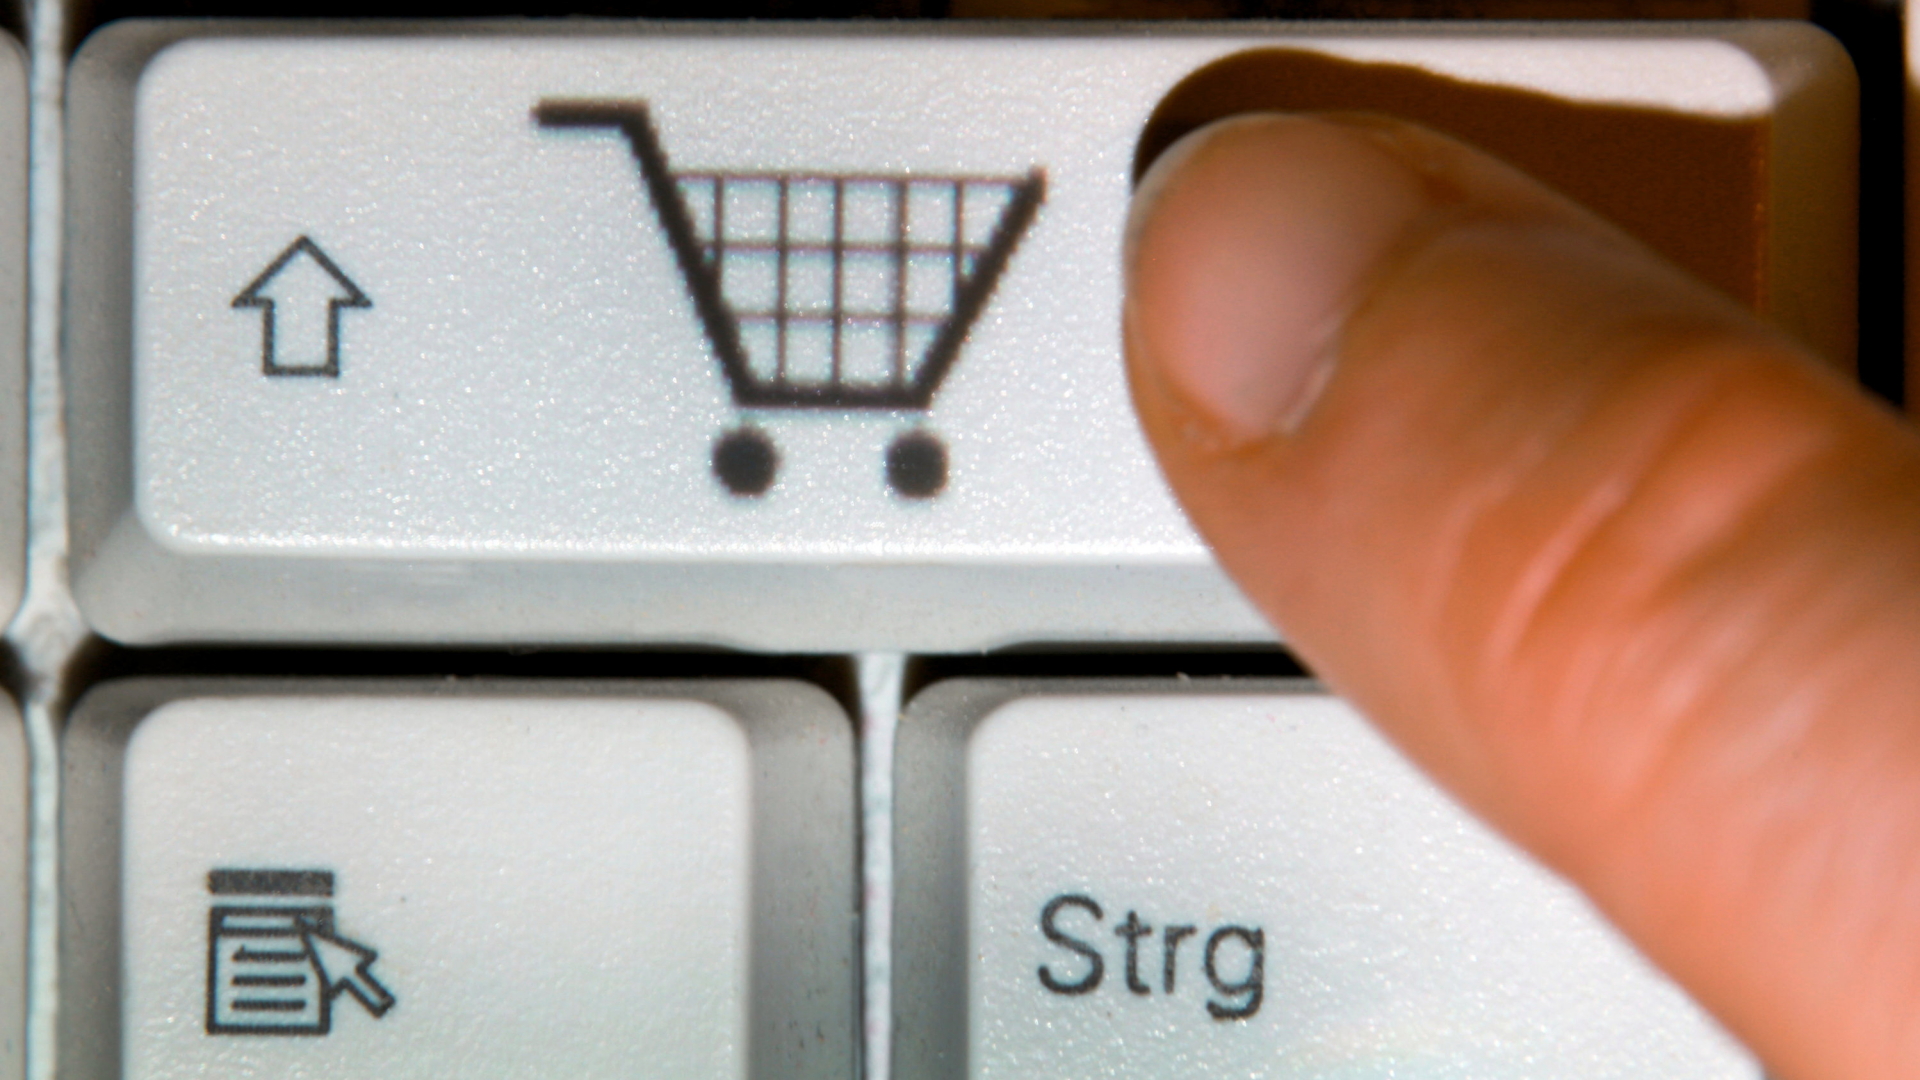 Ein Finger drückt auf einer Tastatur eine Taste mit dem Symbol eines Einkaufwagens.